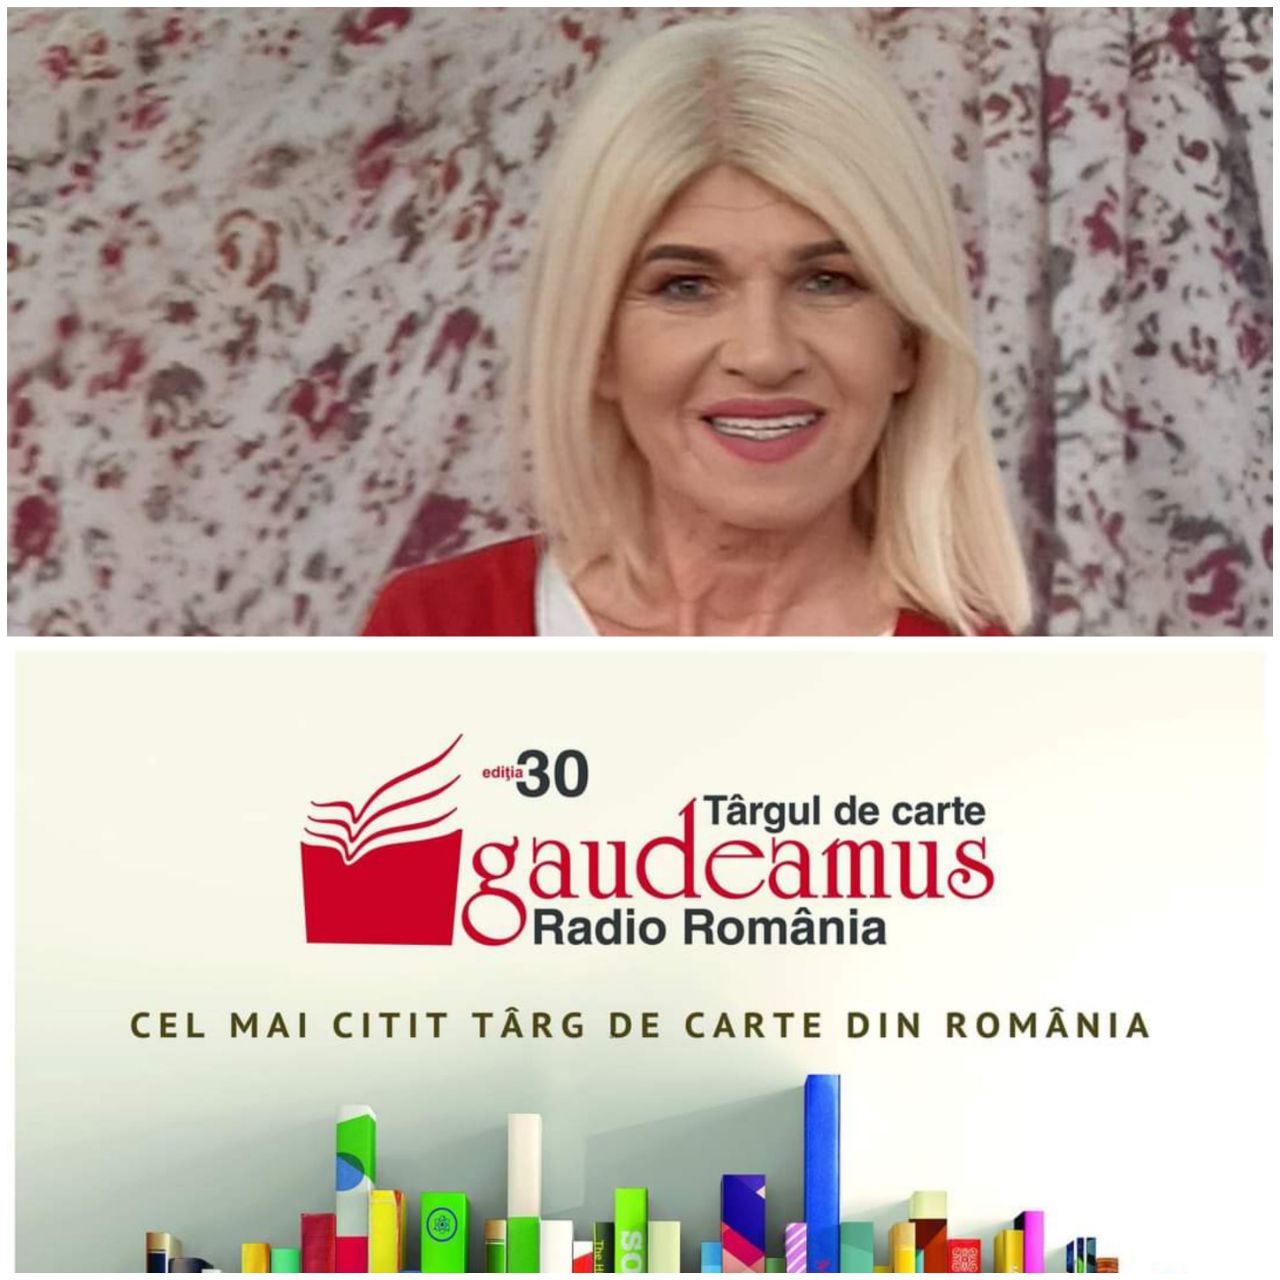 Cora Muntean, impresii de la Târgul de Carte Gaudeamus al Radio România: Oricât de scumpi ar fi pantofii în care stau, cei care nu citesc sunt, de fapt, niște săraci! Se mai poate trăi din scris cărți? Dialog cu Cozmin Gușă la Gold FM. VIDEO